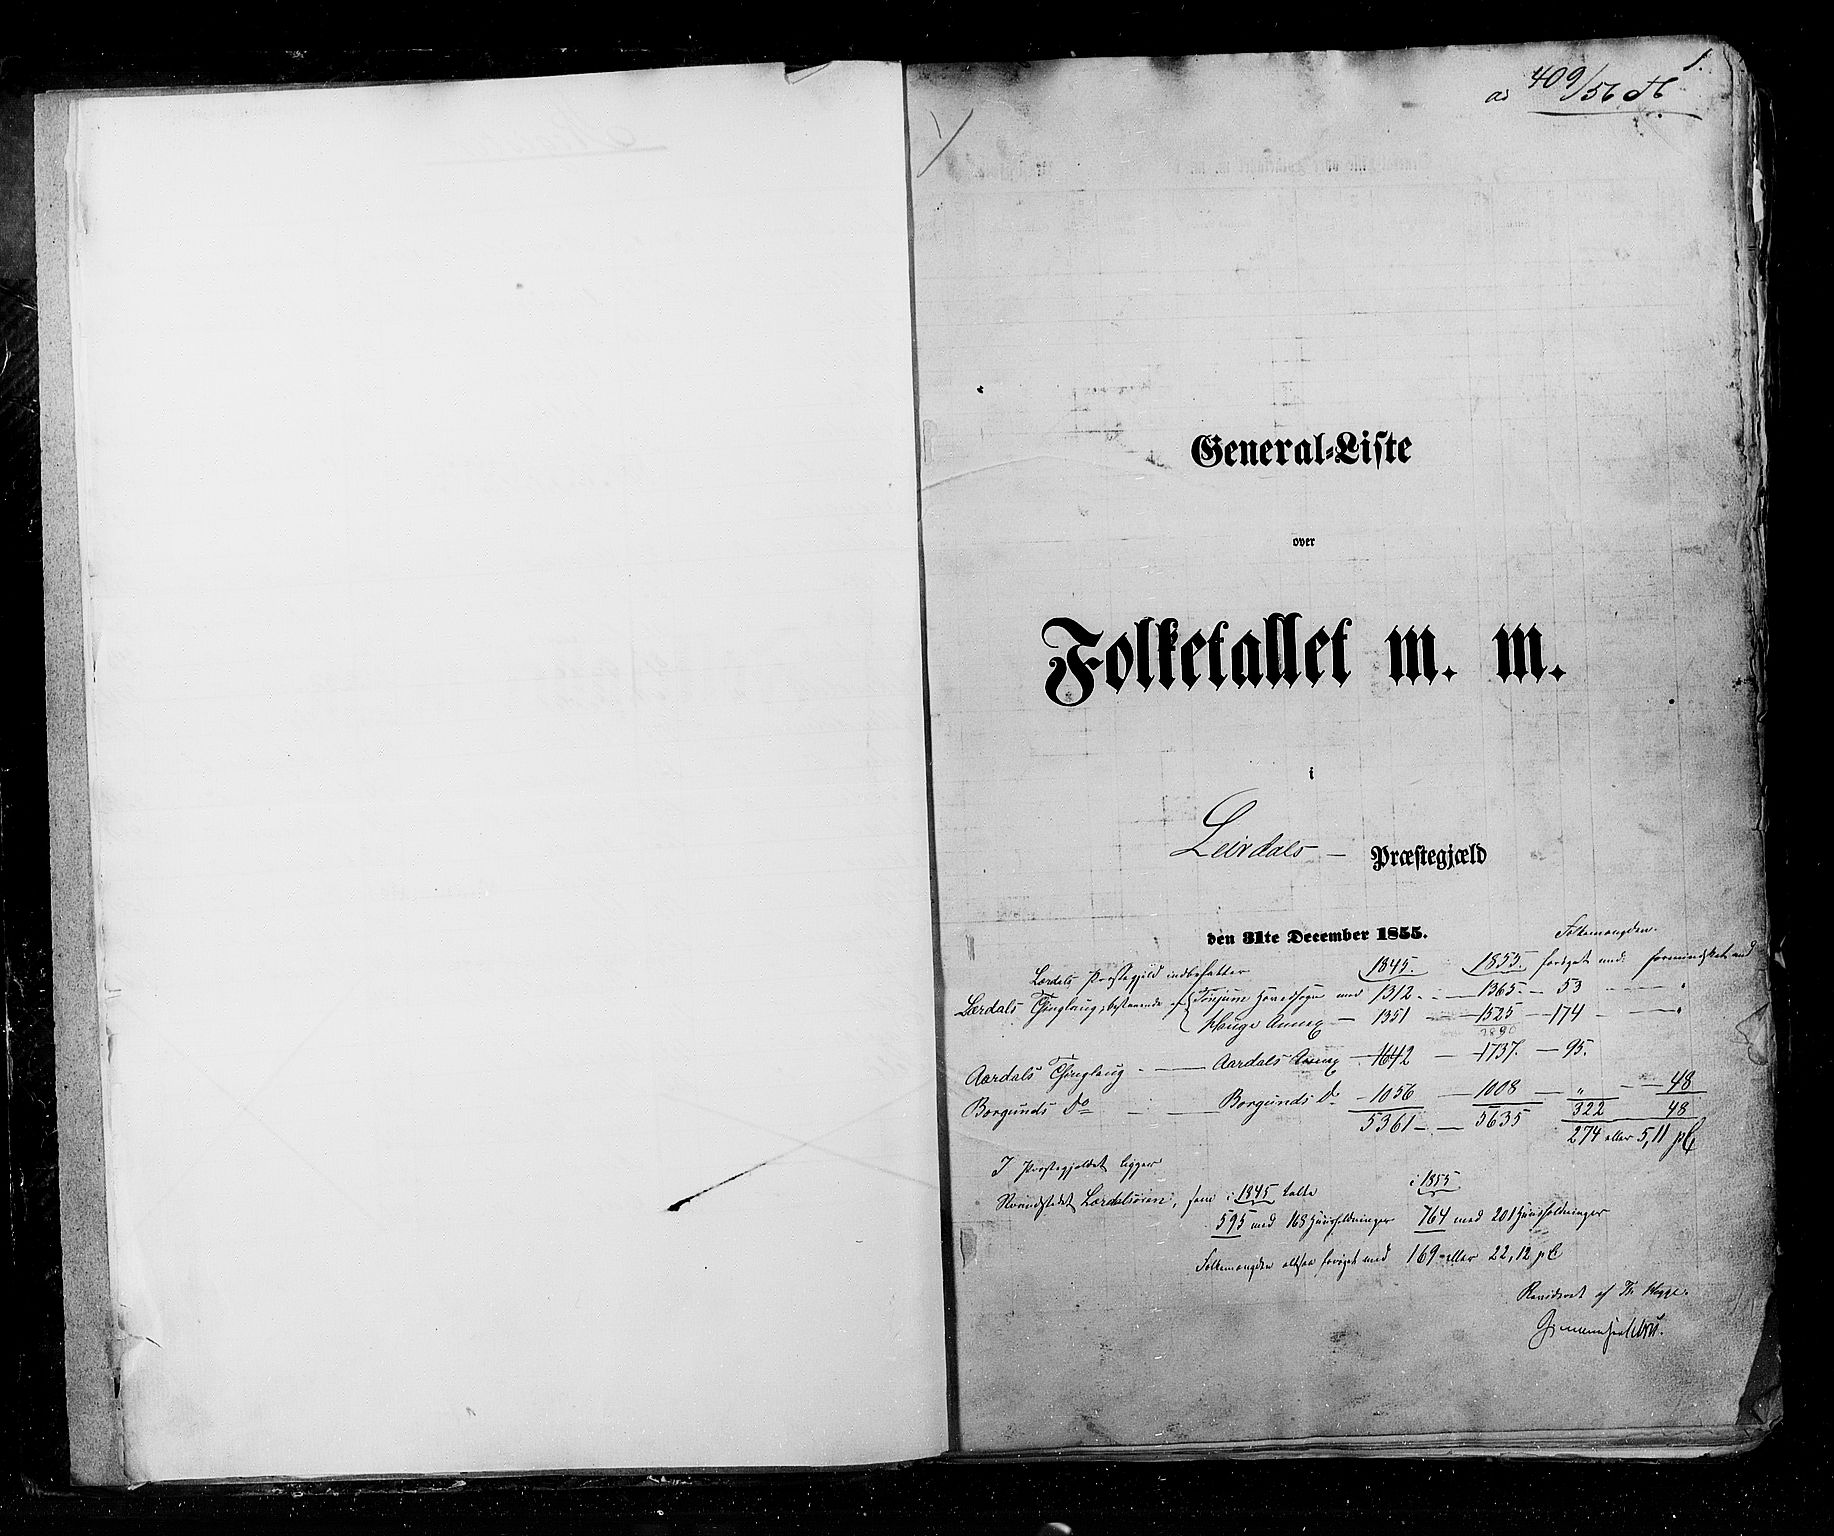 RA, Census 1855, vol. 5: Nordre Bergenhus amt, Romsdal amt og Søndre Trondhjem amt, 1855, p. 1